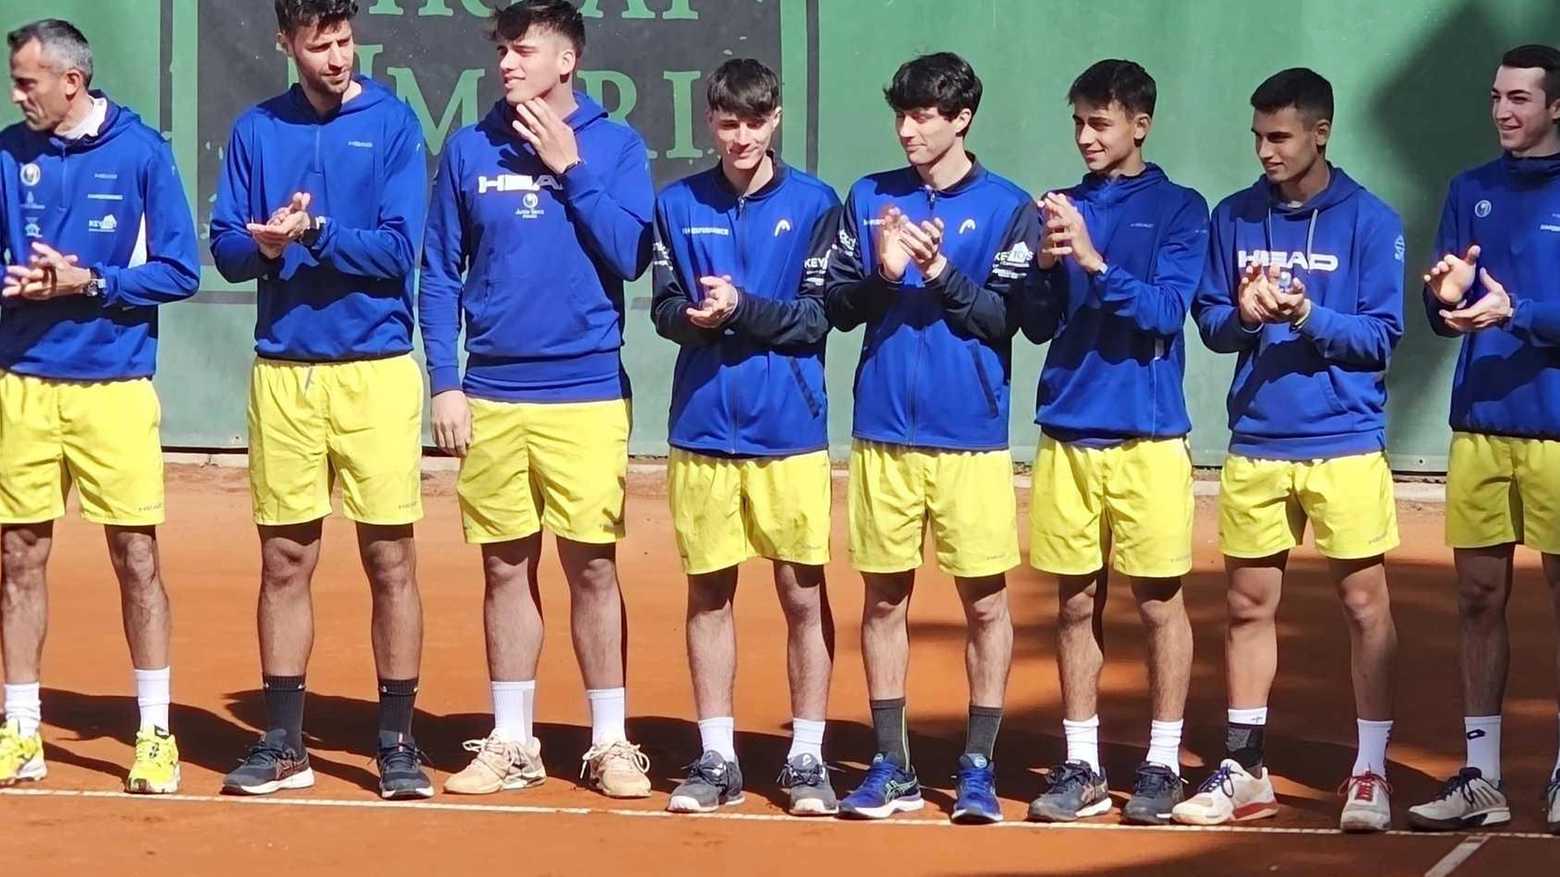 Il Junior Tennis Perugia subisce la prima sconfitta stagionale in trasferta contro il Tennis Club Poggibonsi. Nikodje Trivunac l'unico a segnare un punto. Prossimo impegno il 19 maggio a Padova.